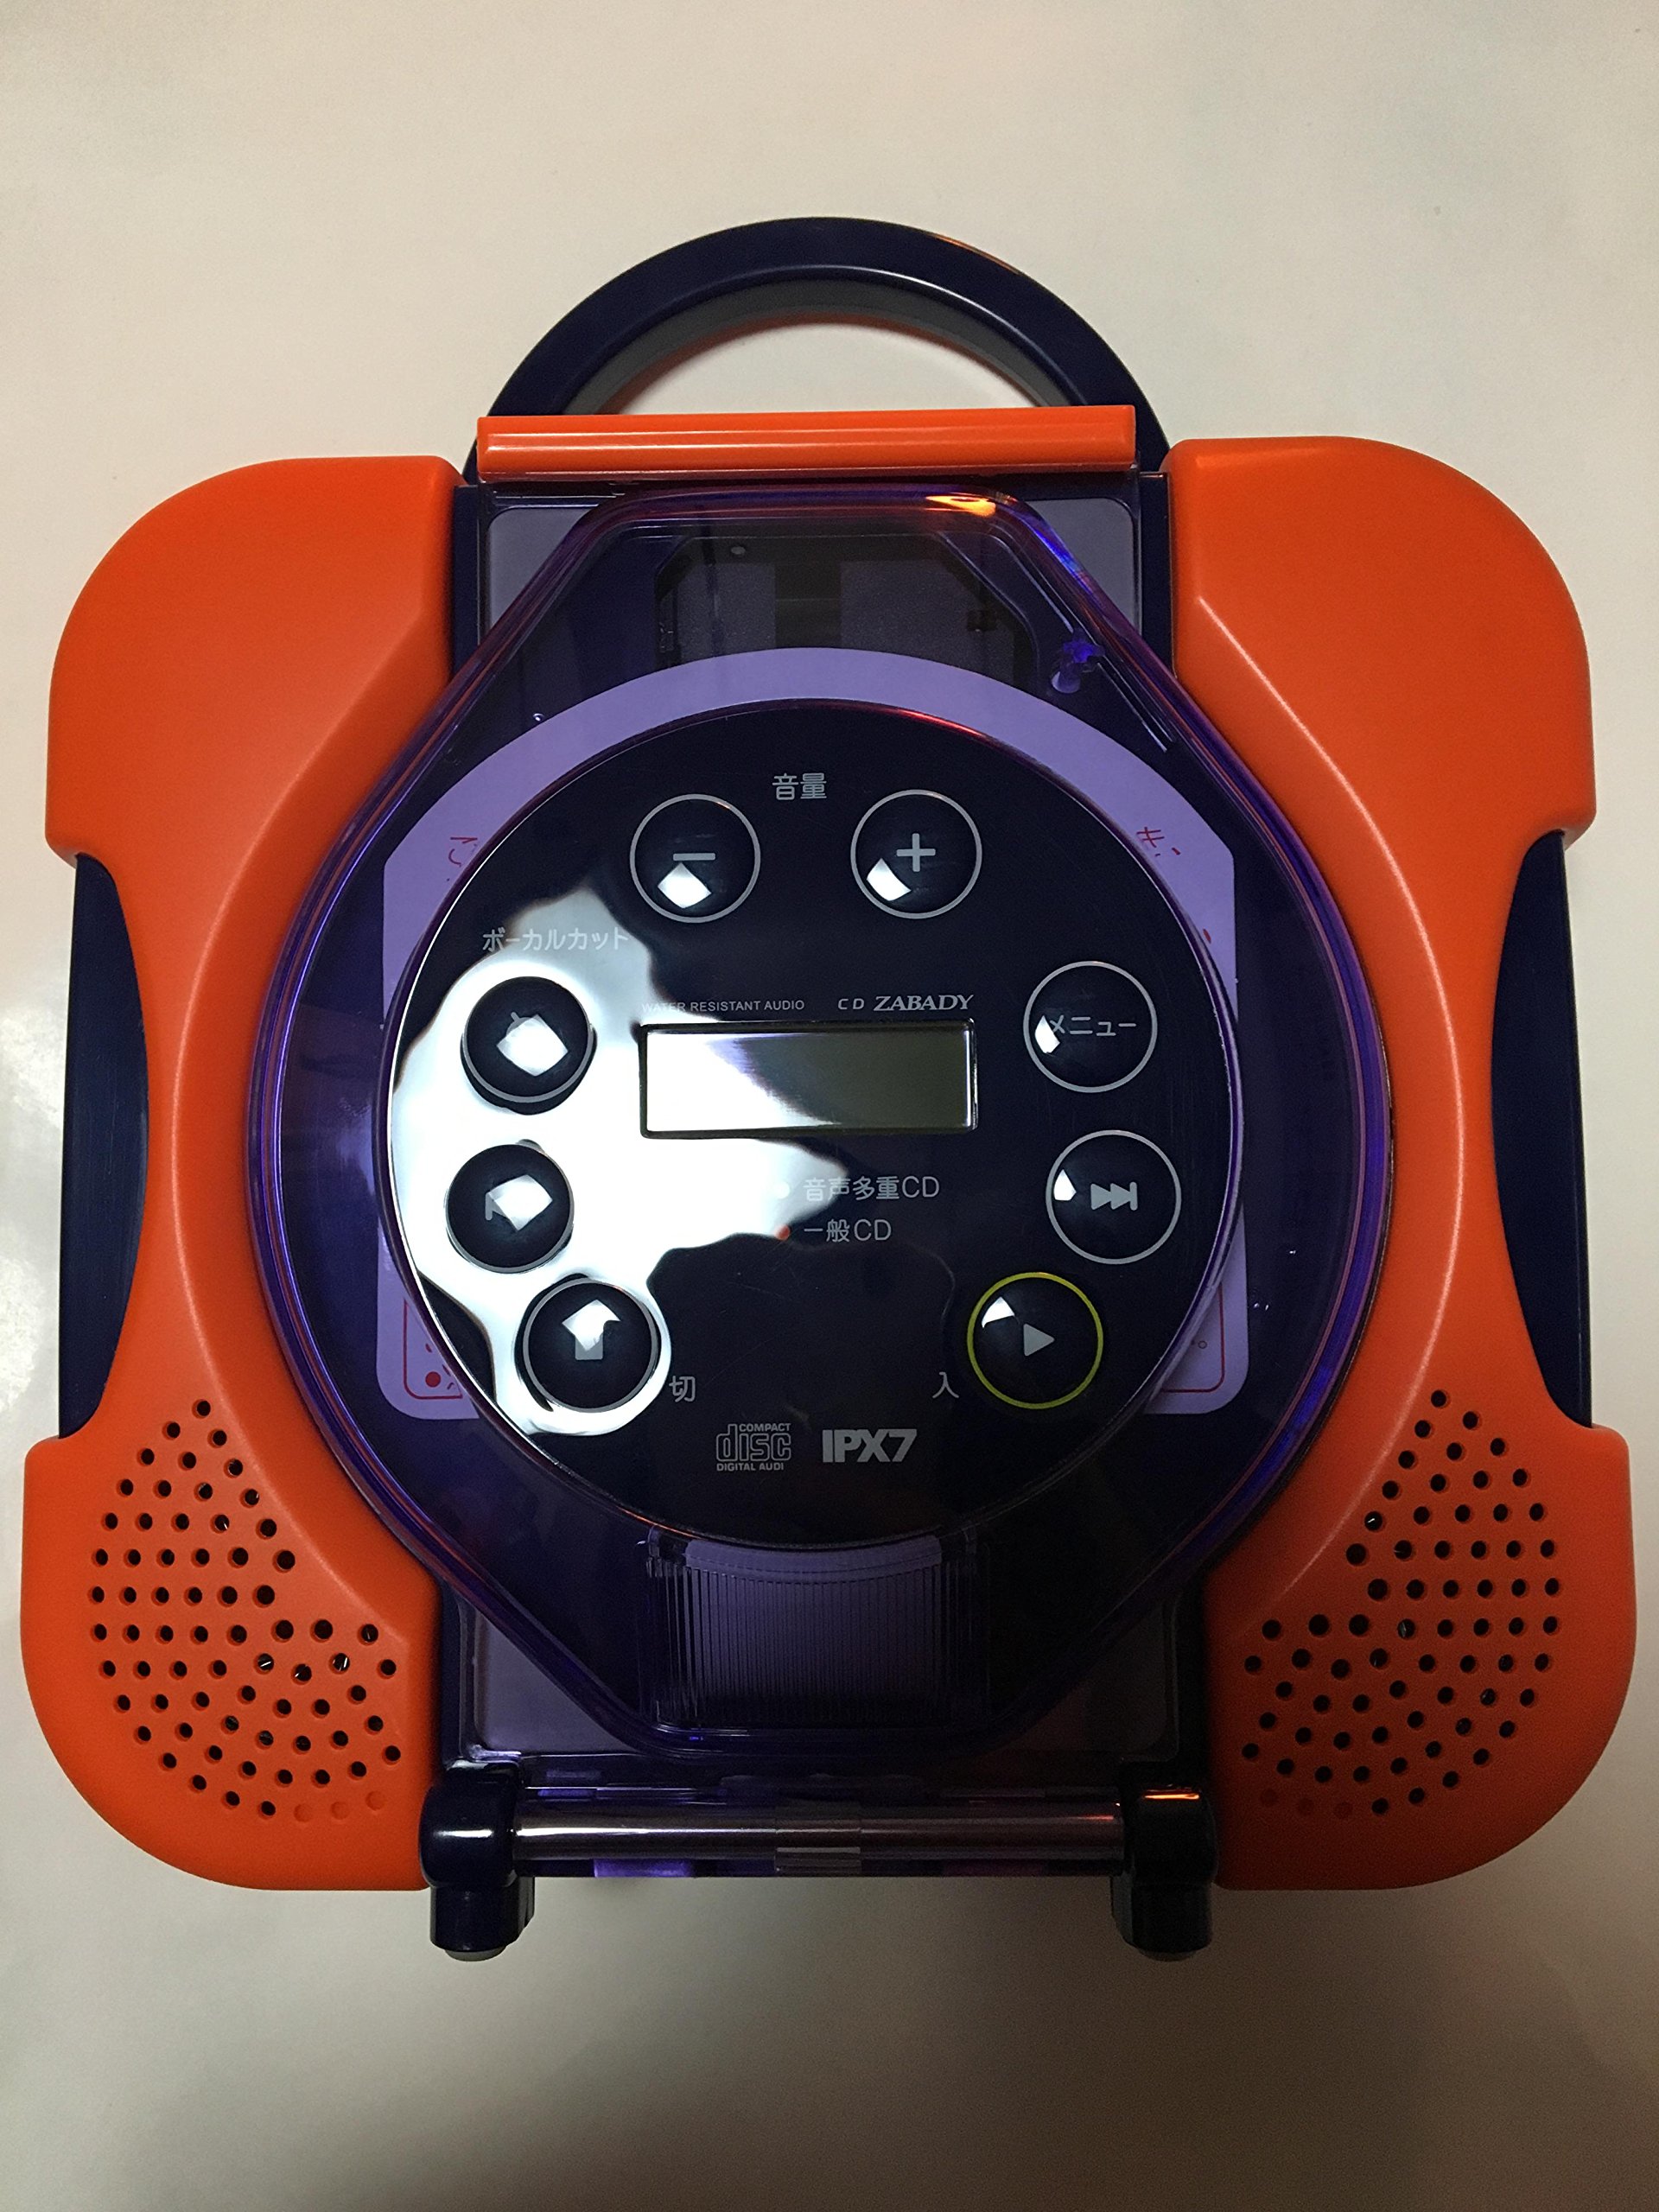 ツインバード 防水CDプレーヤー AV-J165OR（オレンジ） ポータブルCDプレーヤーの商品画像